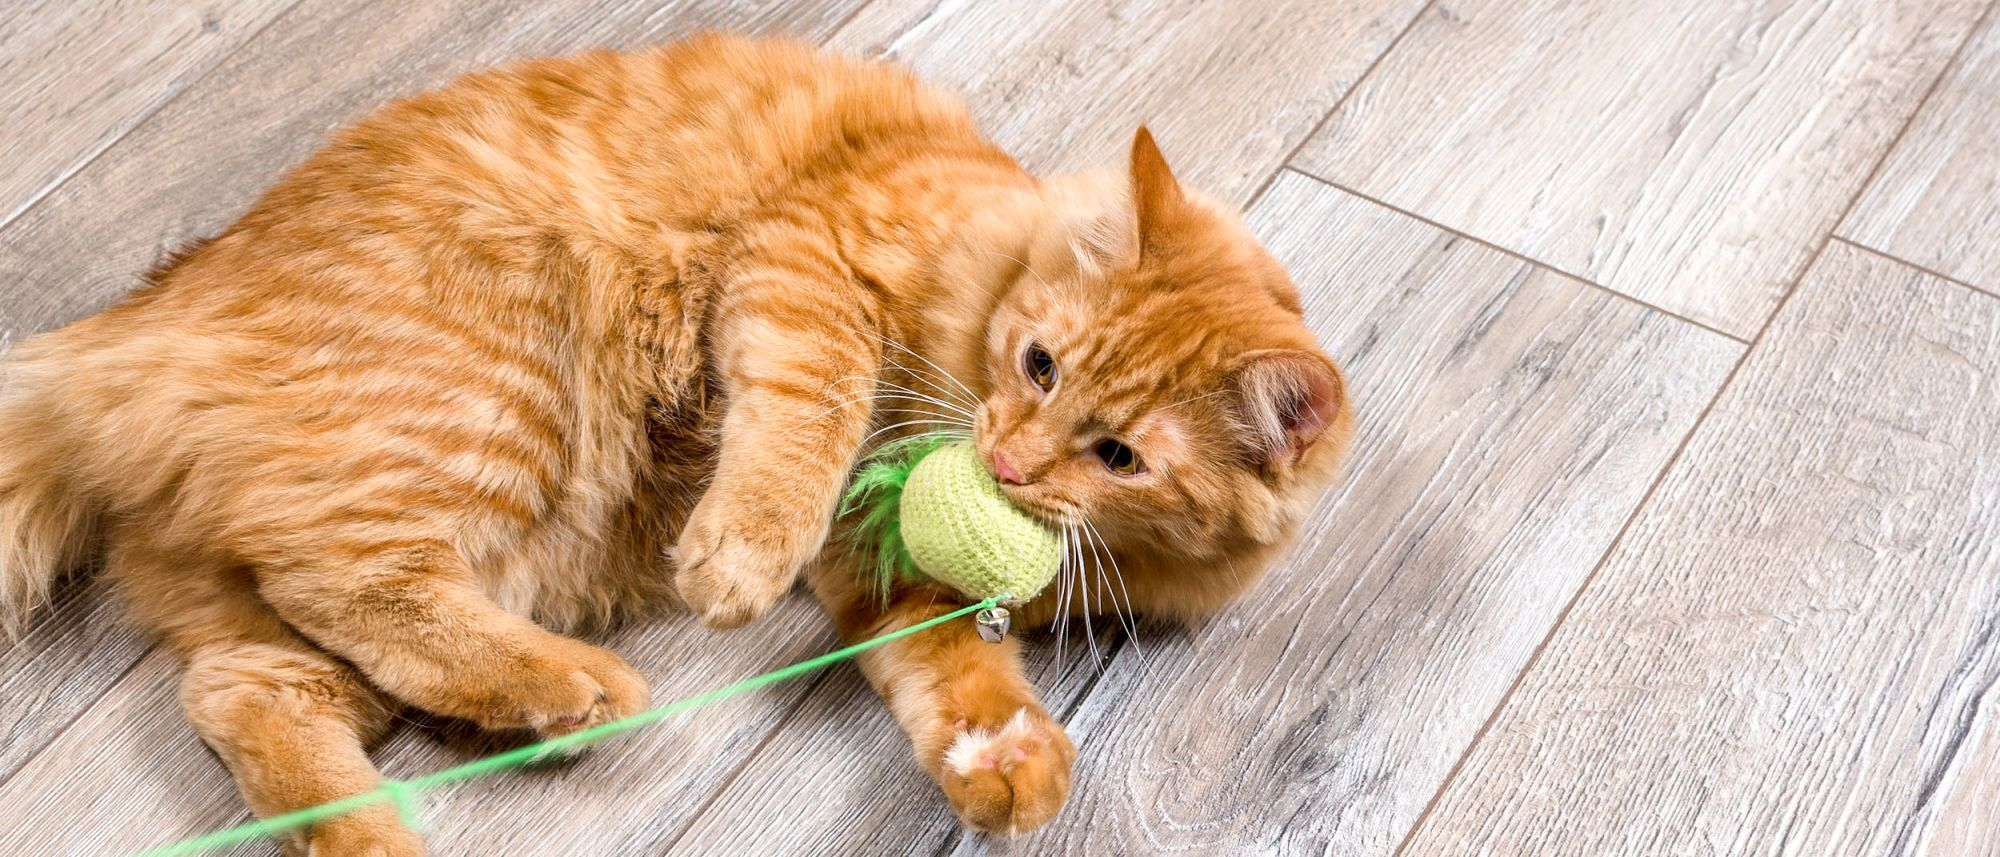 Gato Ginger acostado en el suelo jugando con un juguete específico para gatos.